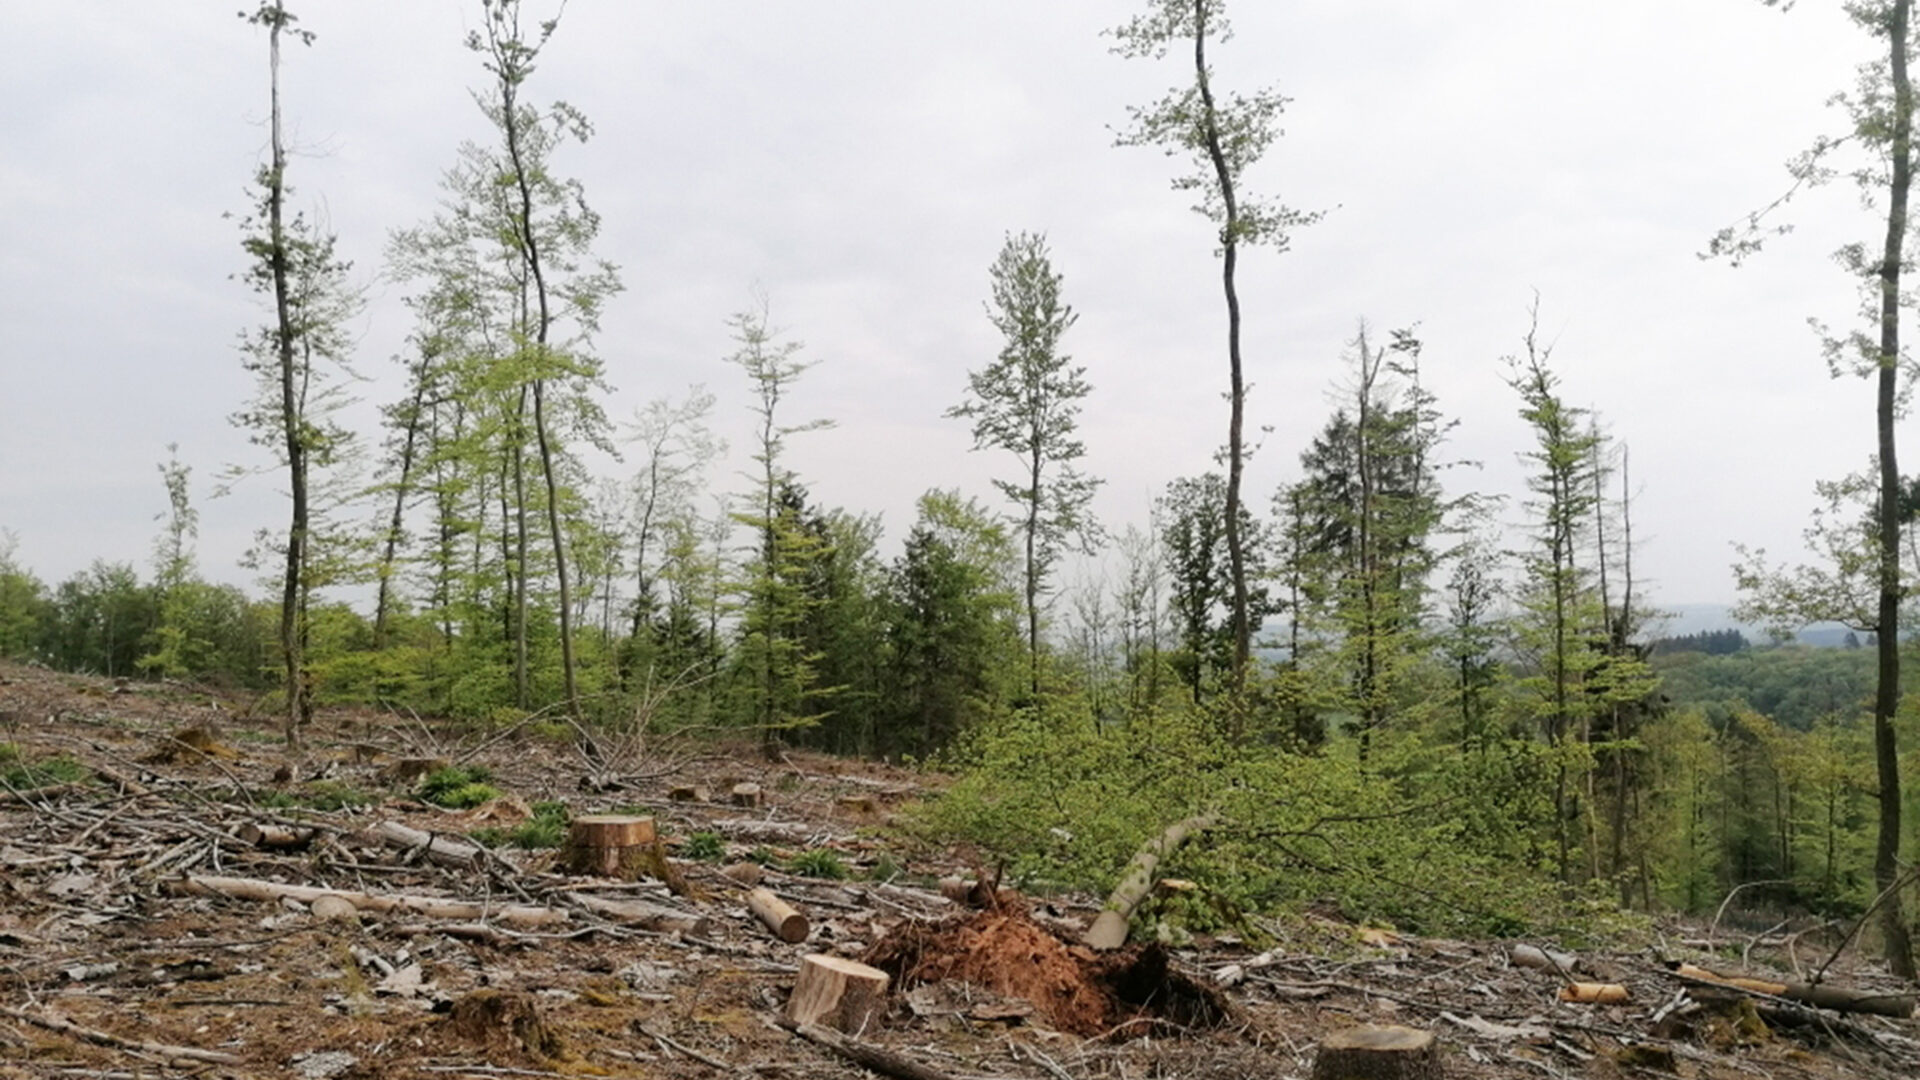 Trauriges Bild vom Schwarzwälder Hochwald. Einzelne dürre Bäume hinter einer Kahlfläche mit vielen herumliegenden Ästen.